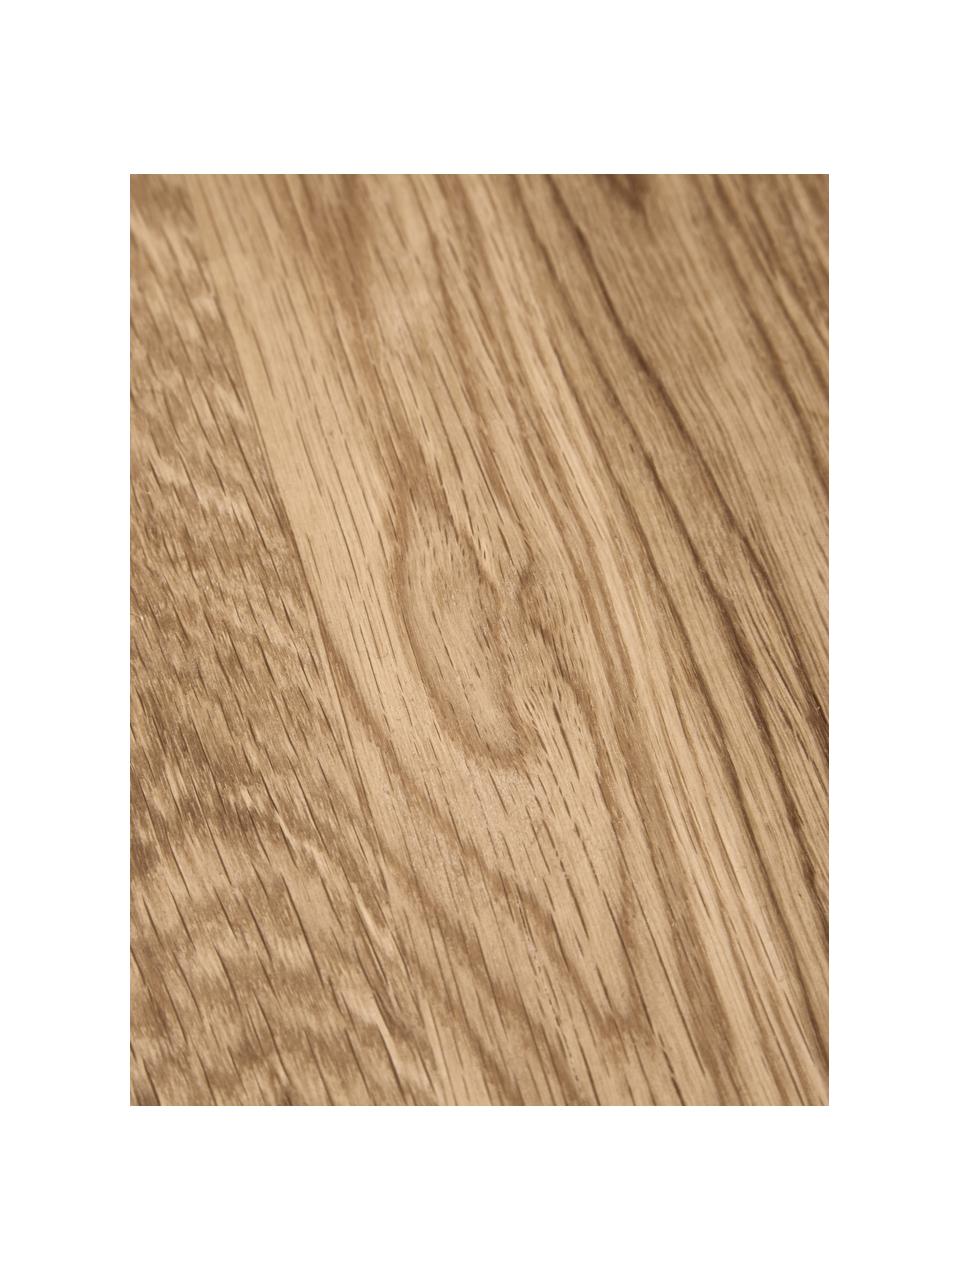 Table d'appoint en bois de chêne Didi, Bois de chêne, huilé, certifié FSC

Ce produit est fabriqué à partir de bois certifié FSC® et issu d'une exploitation durable, Bois de chêne, Ø 40 x haut. 45 cm